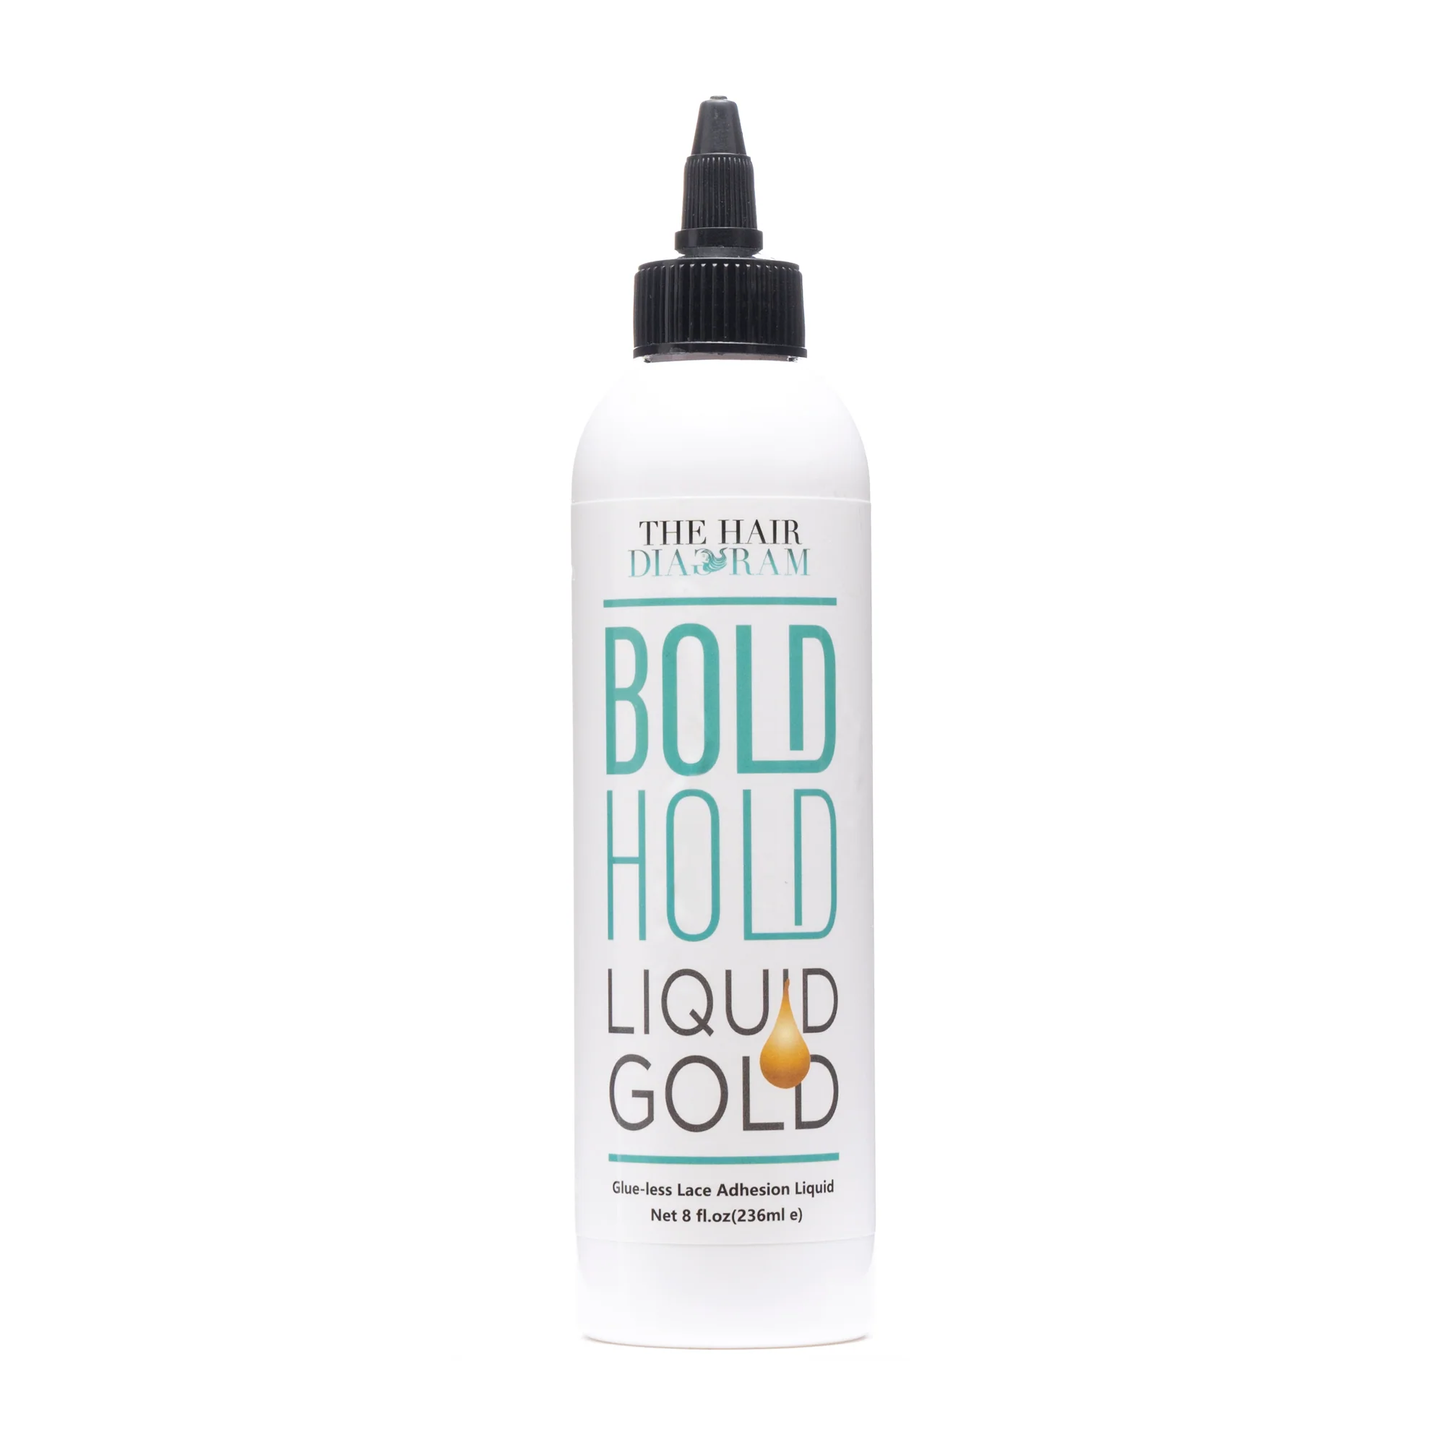 The Hair Diagram Bold Hold Liquid Gold Glue-less Lace Adhesion Liquid 8 fl oz